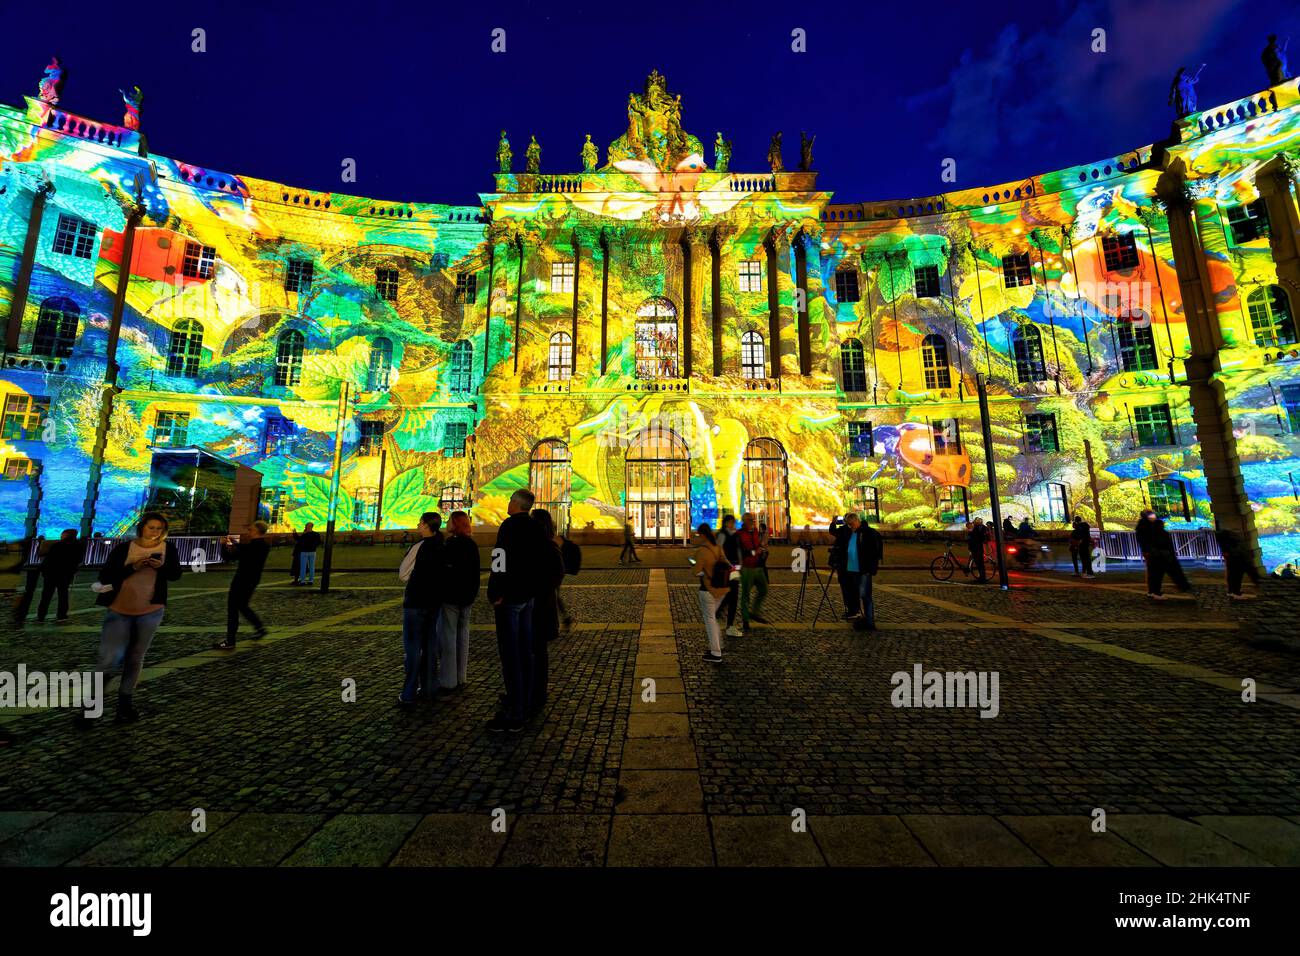 Bebelplatz during the Festival of Lights, Unter den Linden, Berlin, Germany, Europe Stock Photo